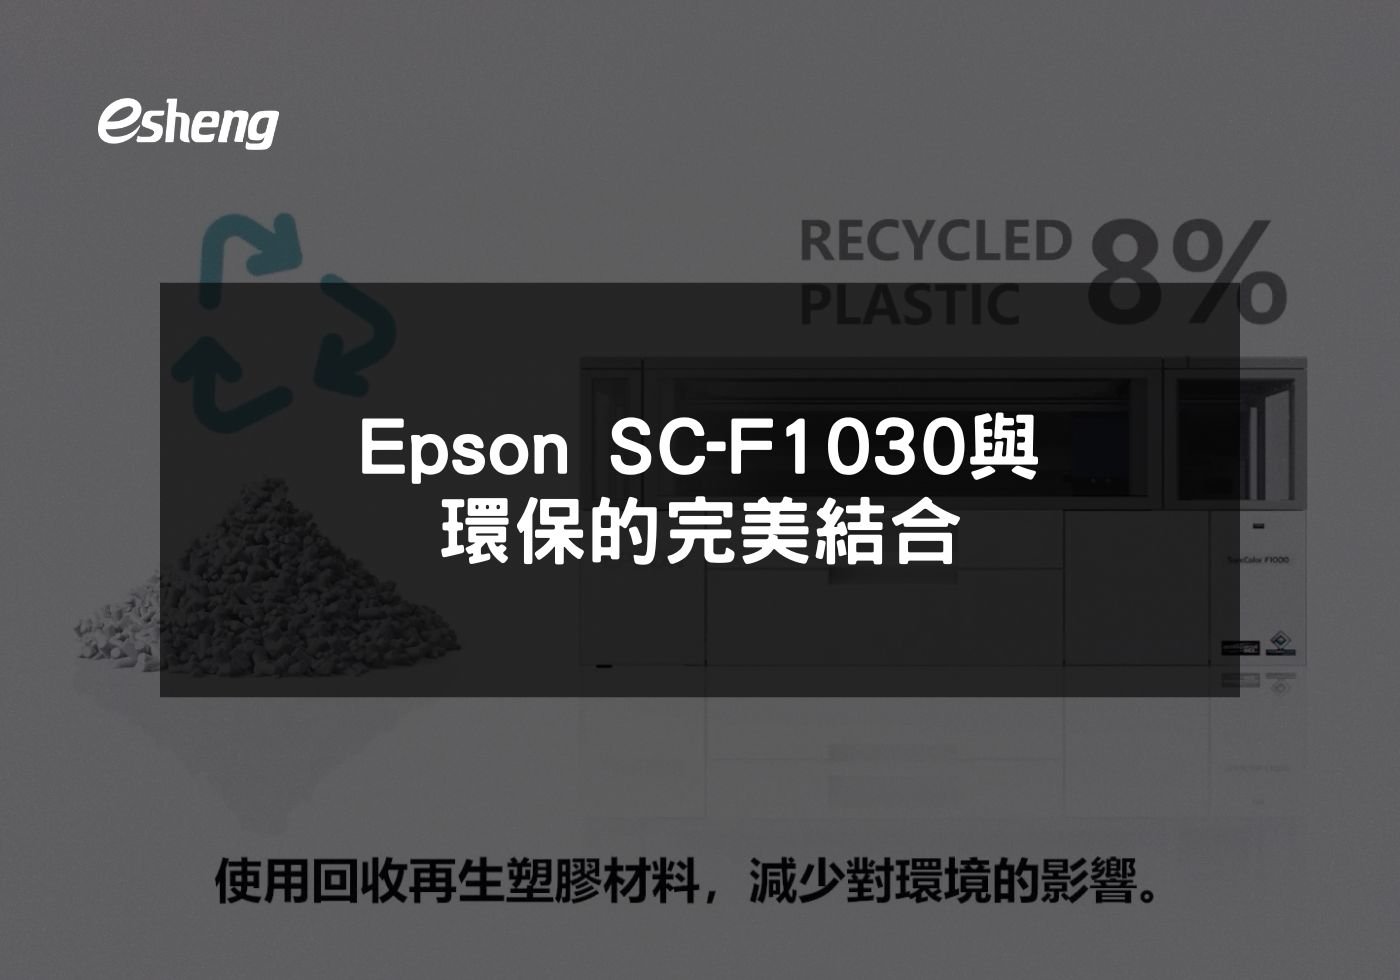 您目前正在查看 Epson SC-F1030與環保的完美結合